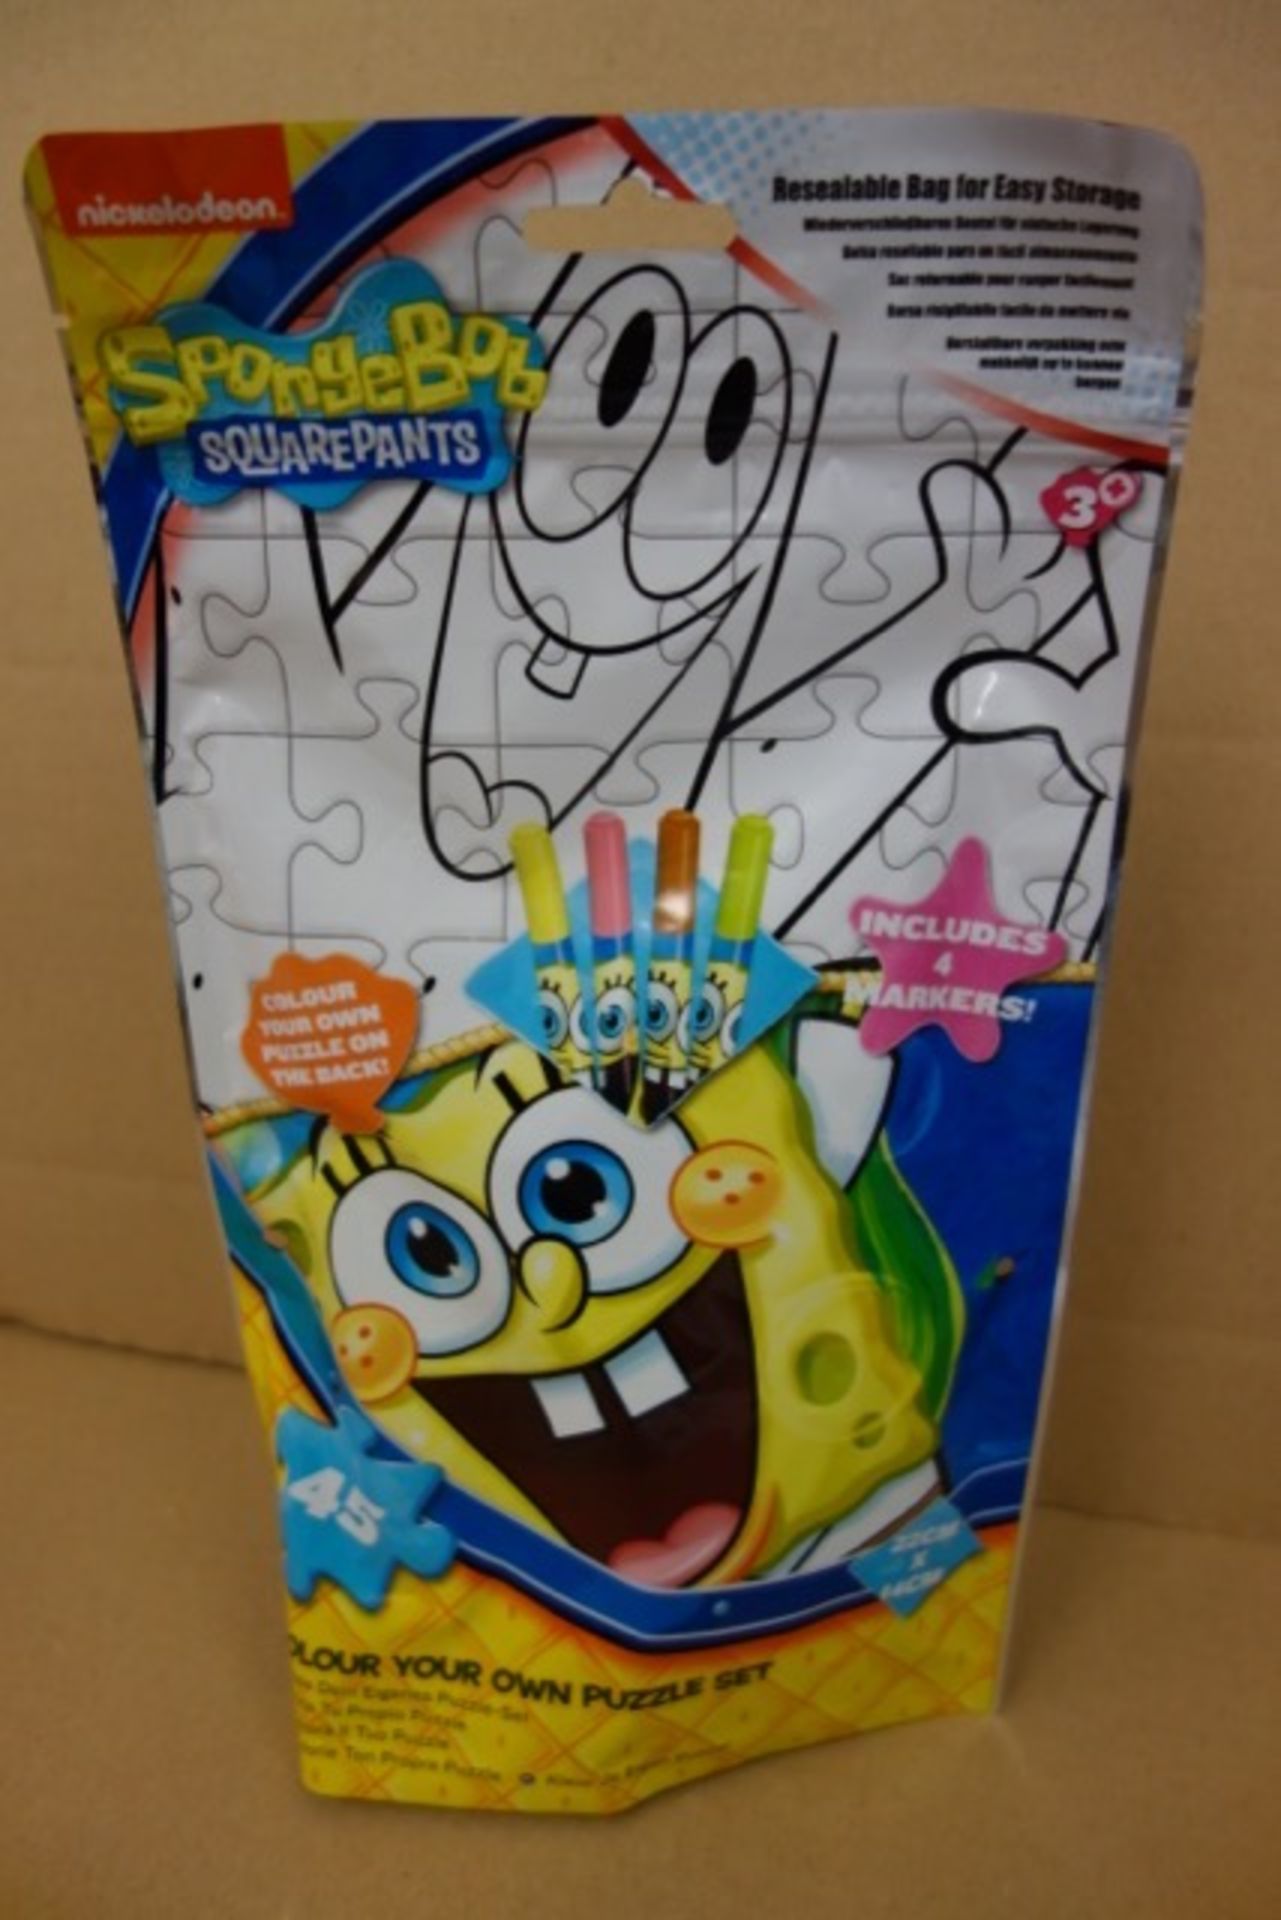 Pallet to contain 840 x Brand New Spongebob Squarepants Colour Your Own Puzzle Set.